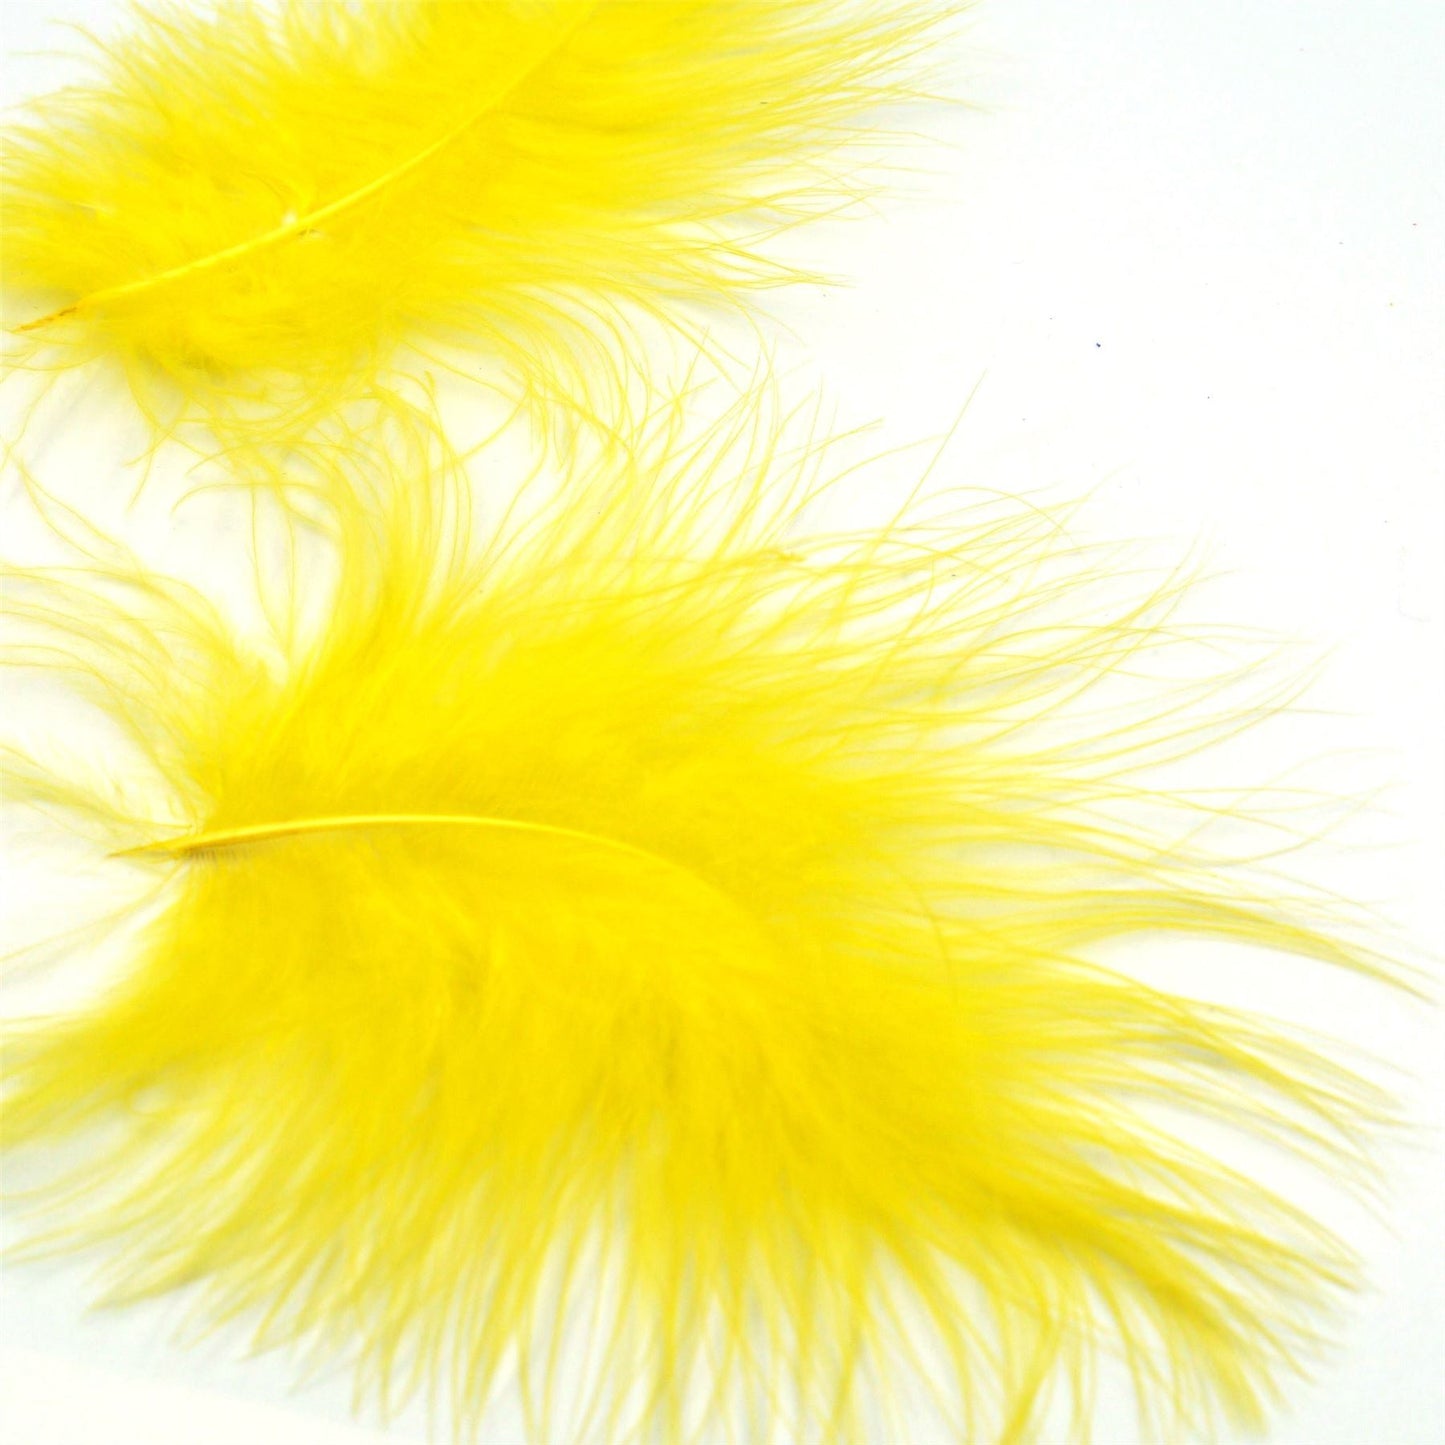 Marabou Feathers x 20pcs FE008